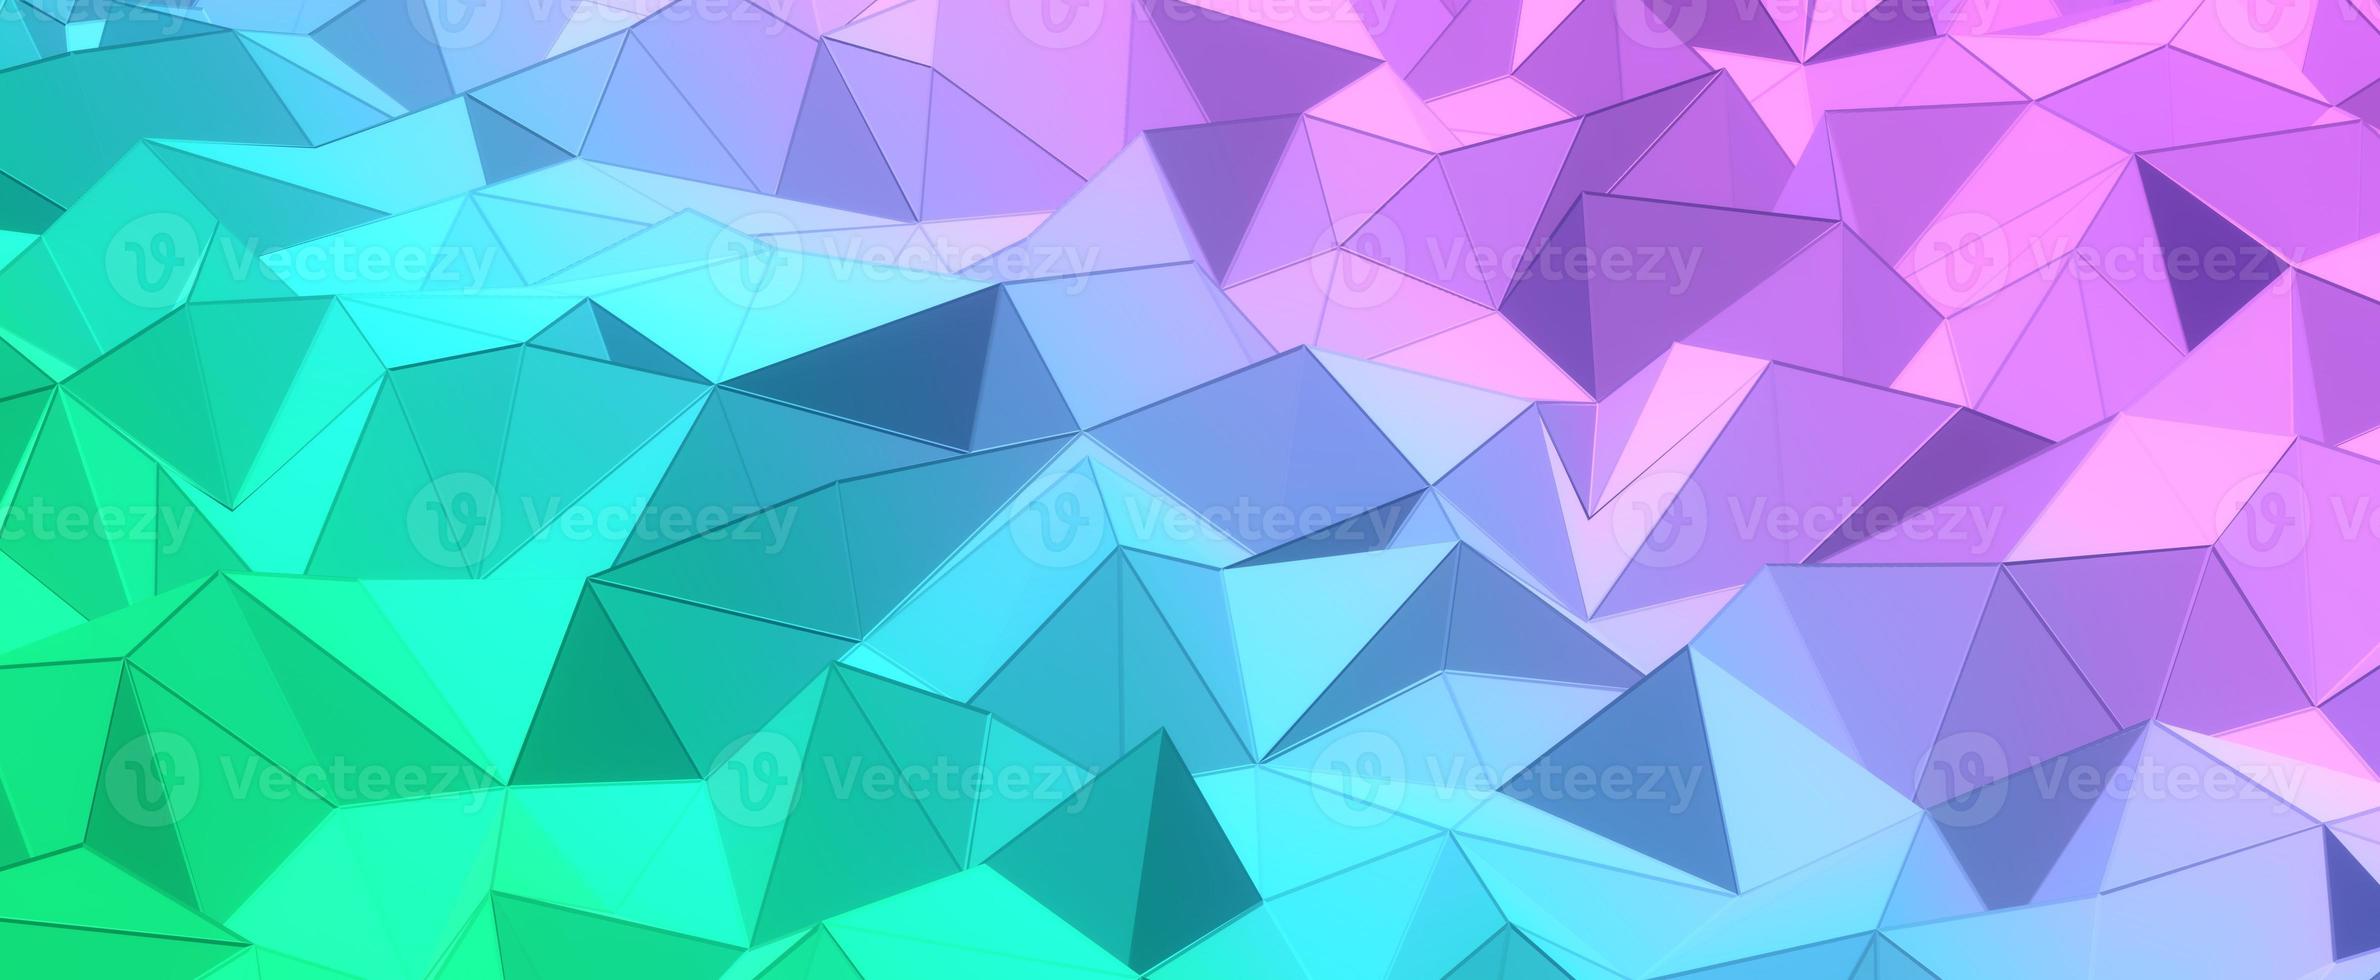 paarse kristallen heuvels met blauwe achtergrond met kleurovergang. geometrische groene veelhoek met 3D render mesh. driehoekige digitale texturen gestapeld in creatieve formaties met een futuristisch interieur foto